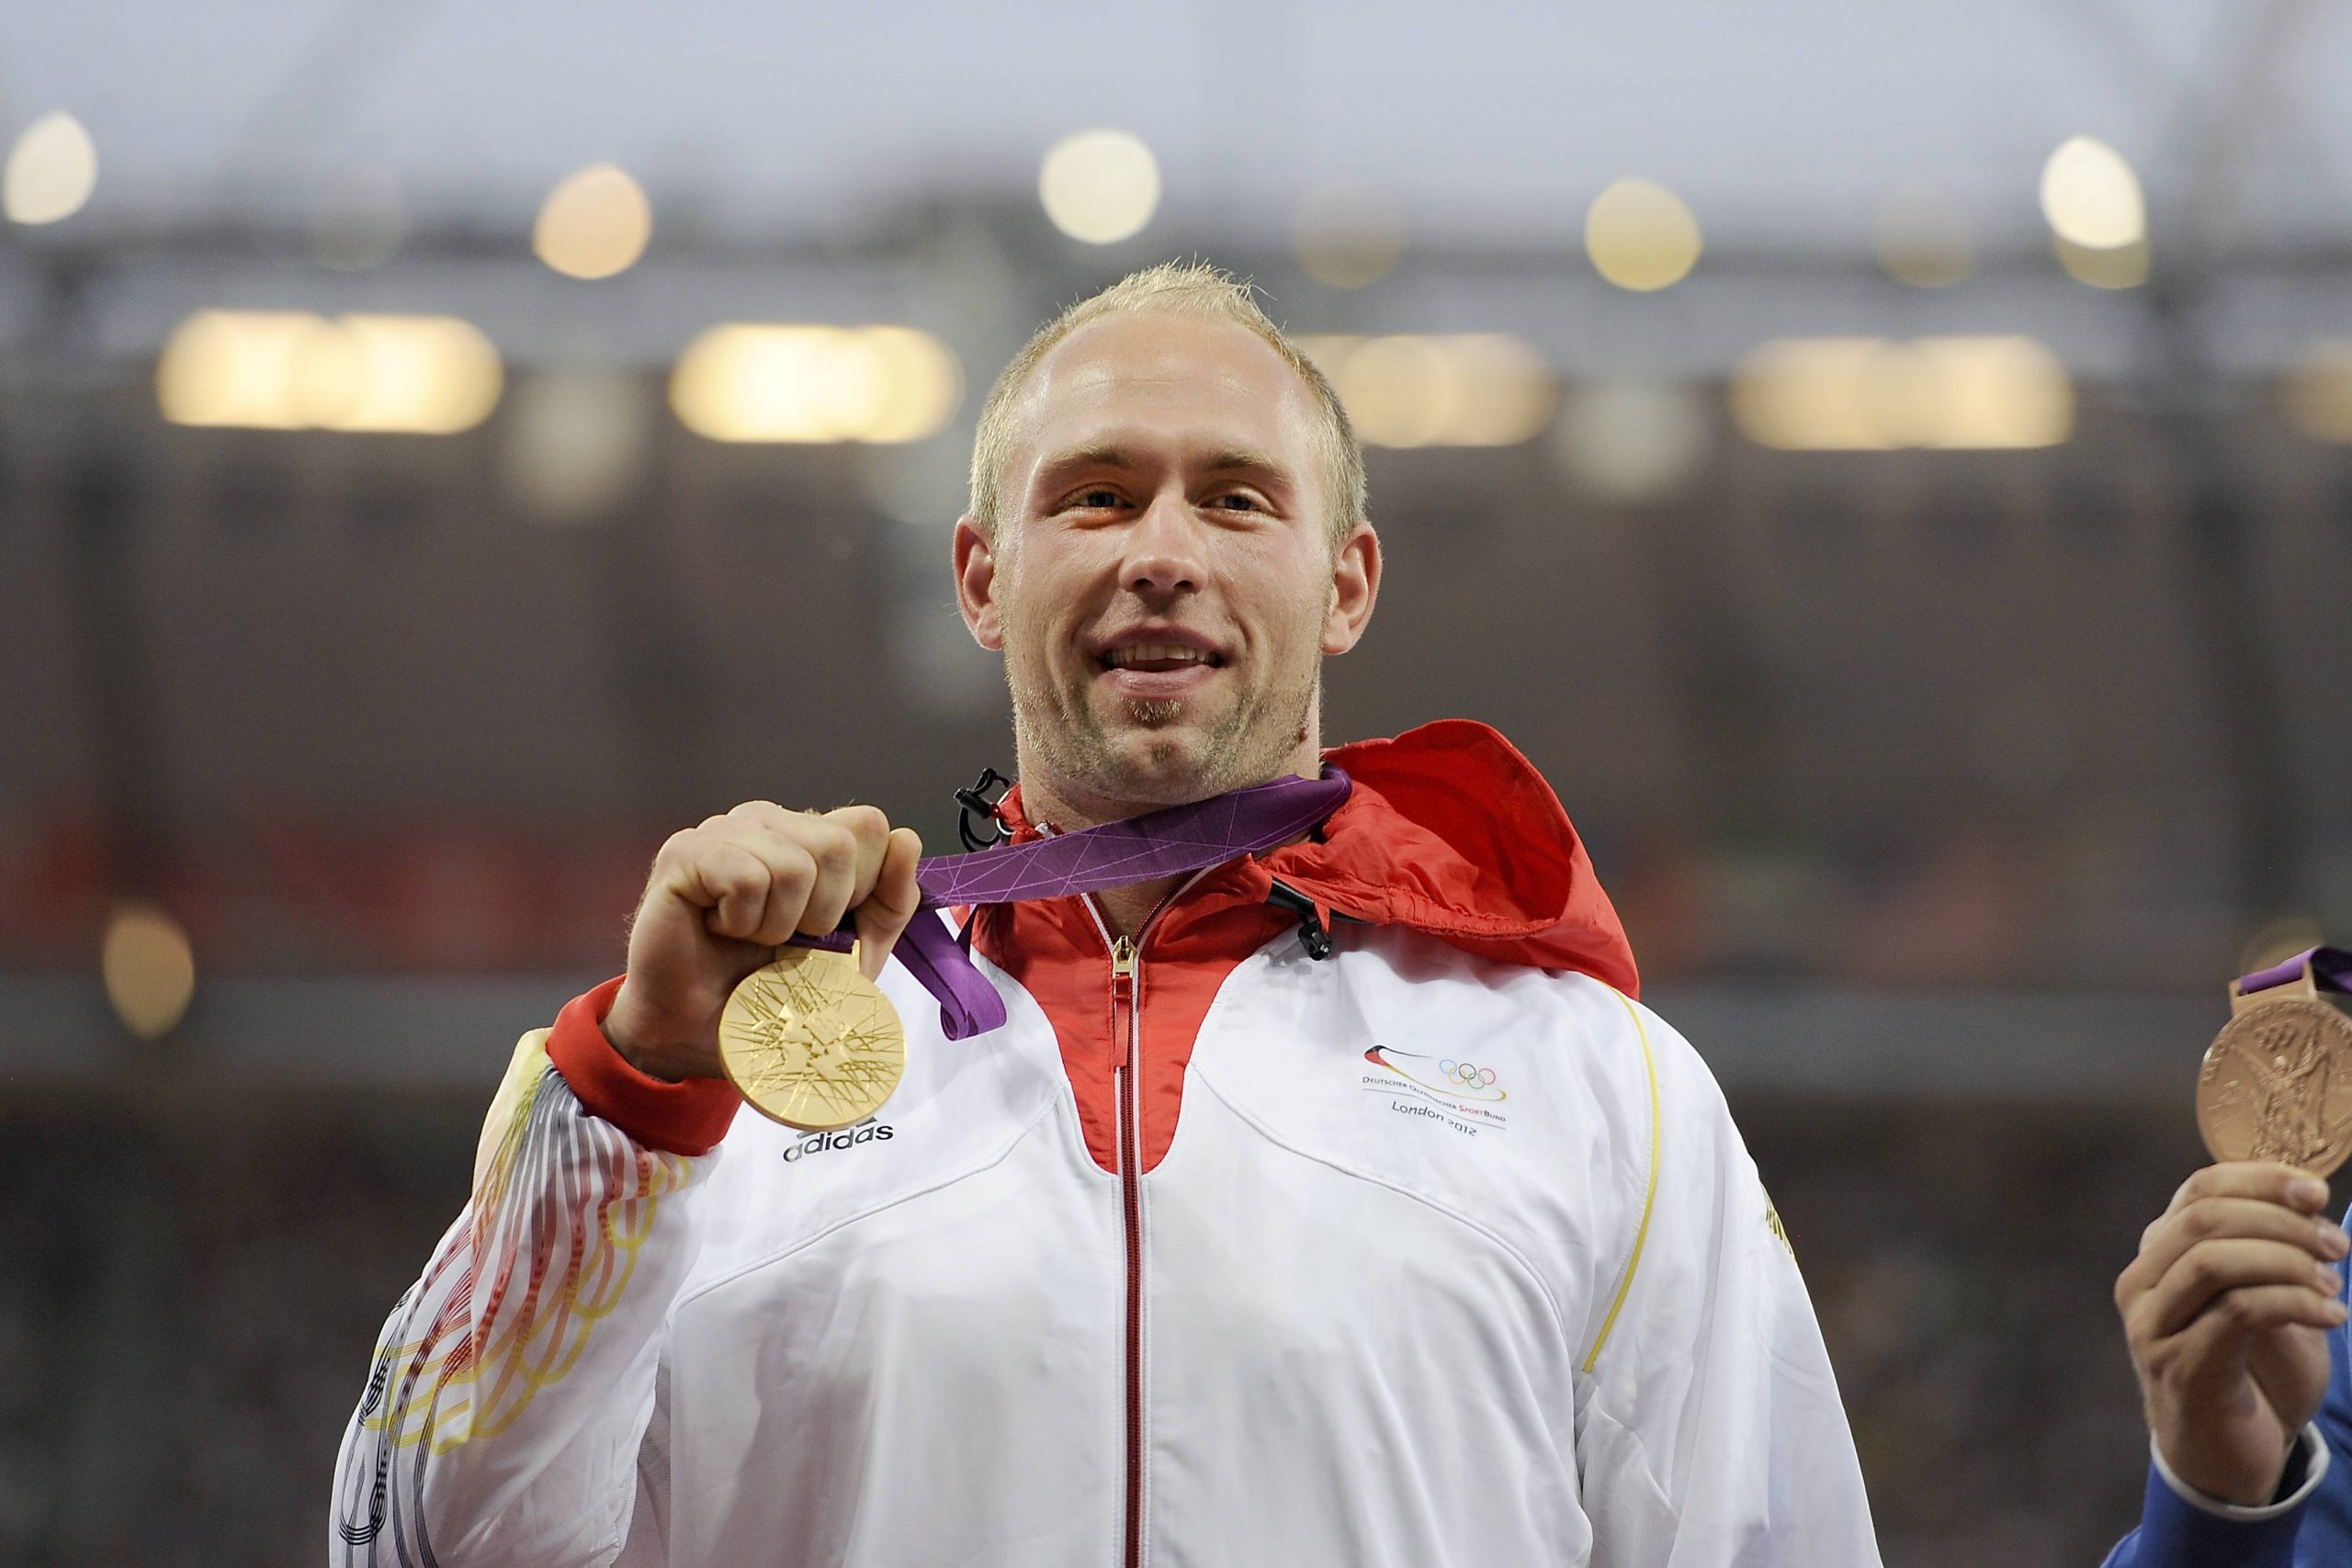 2012 gewann Robert Harting in London Olympia-Gold – jetzt wirbt der Diskuswerfer für Berlin als Austragungsort 2036.